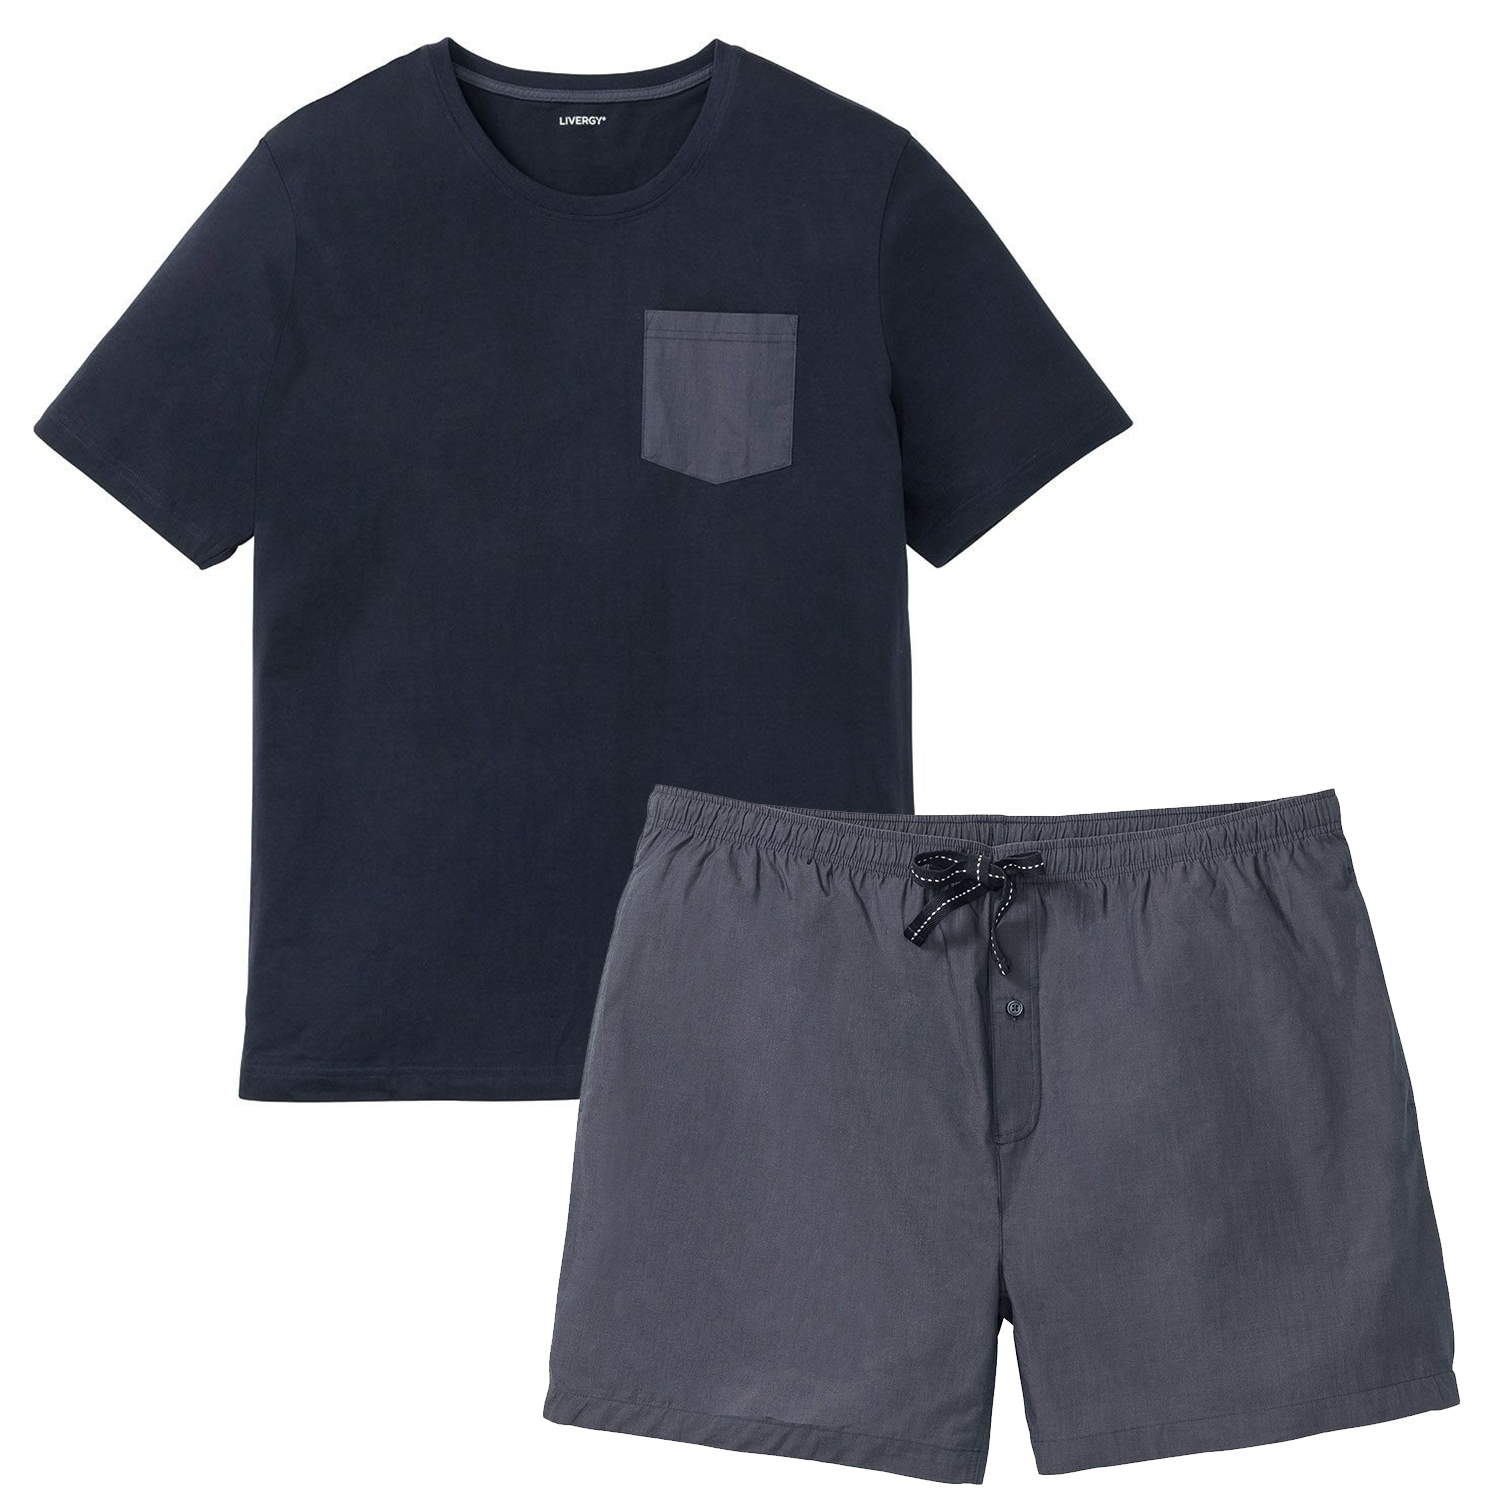 ست تی شرت و شلوارک مردانه لیورجی مدل روناک کد Plus2022 رنگ نوک مدادی